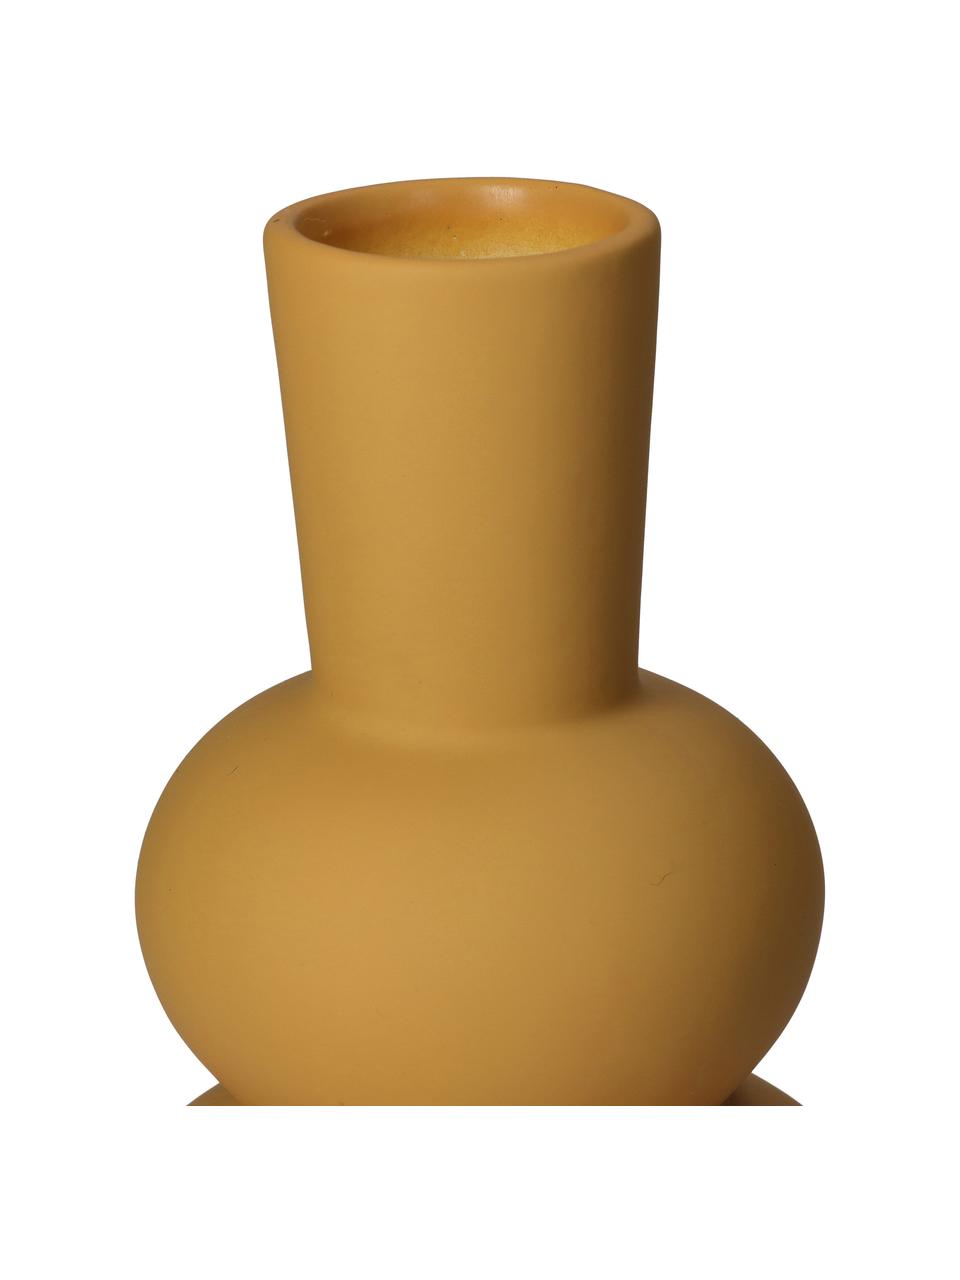 Vaso moderno in gres giallo ocra Eathan, Gres, Giallo ocra, Ø 11 x Alt. 20 cm